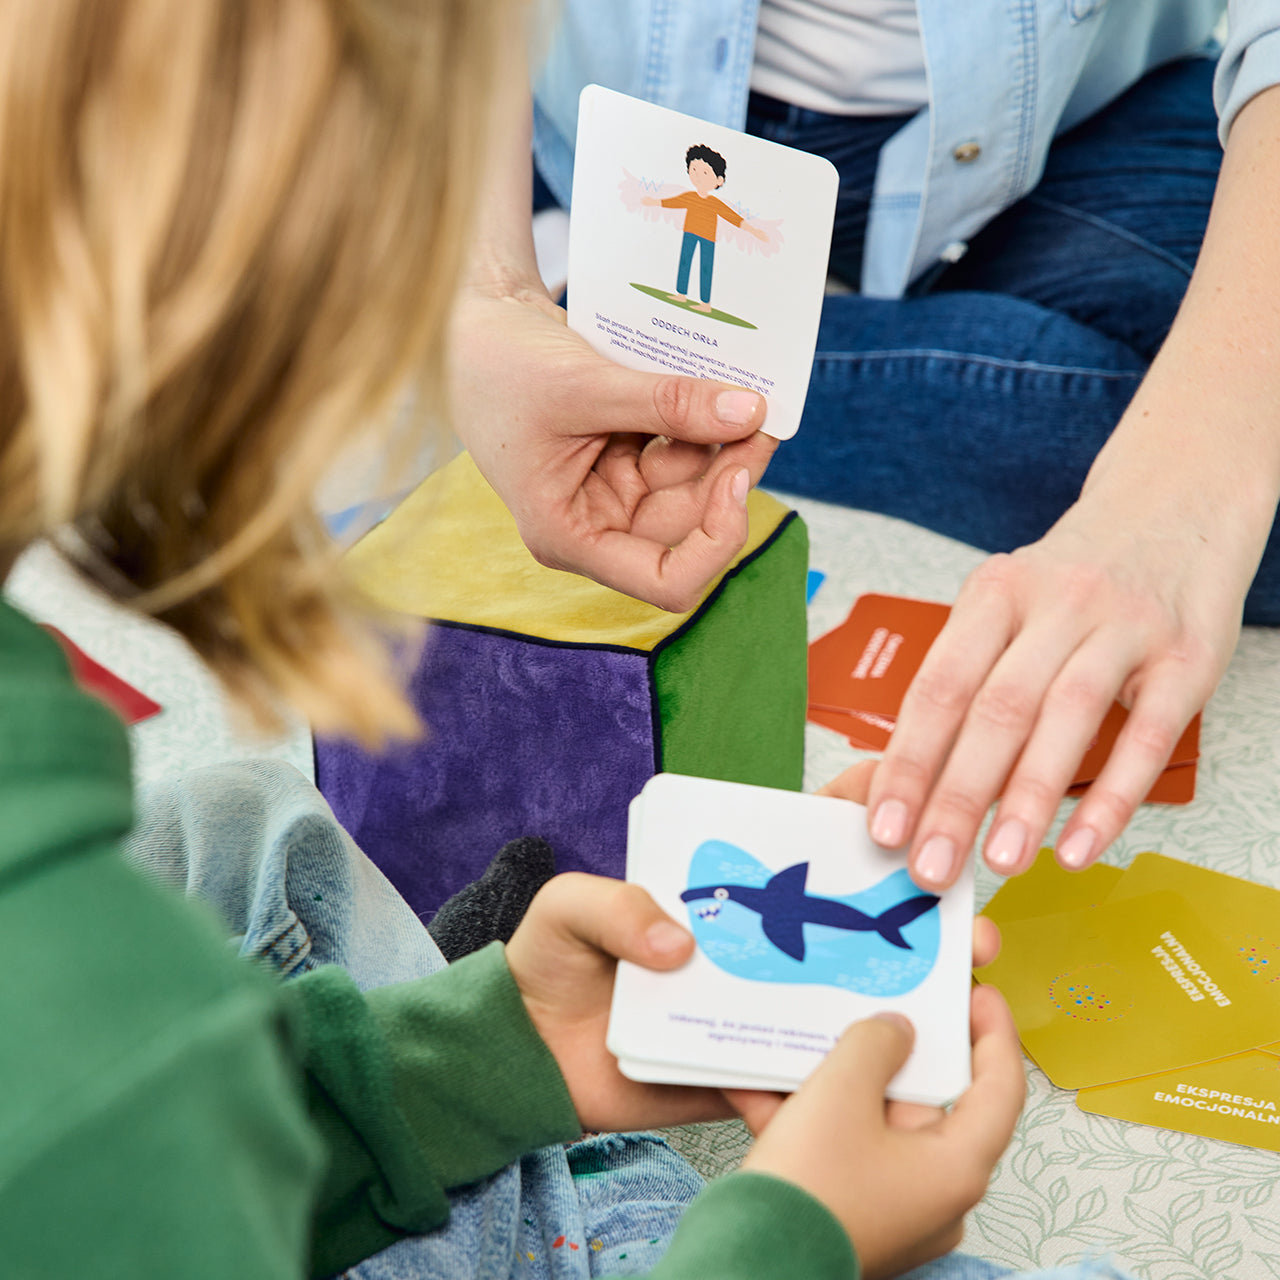 Na zdjęciu widoczne dłonie kobiety i dziecka; trzymają karty z zadaniami do gry "Kostka aktywności - mindfulness"